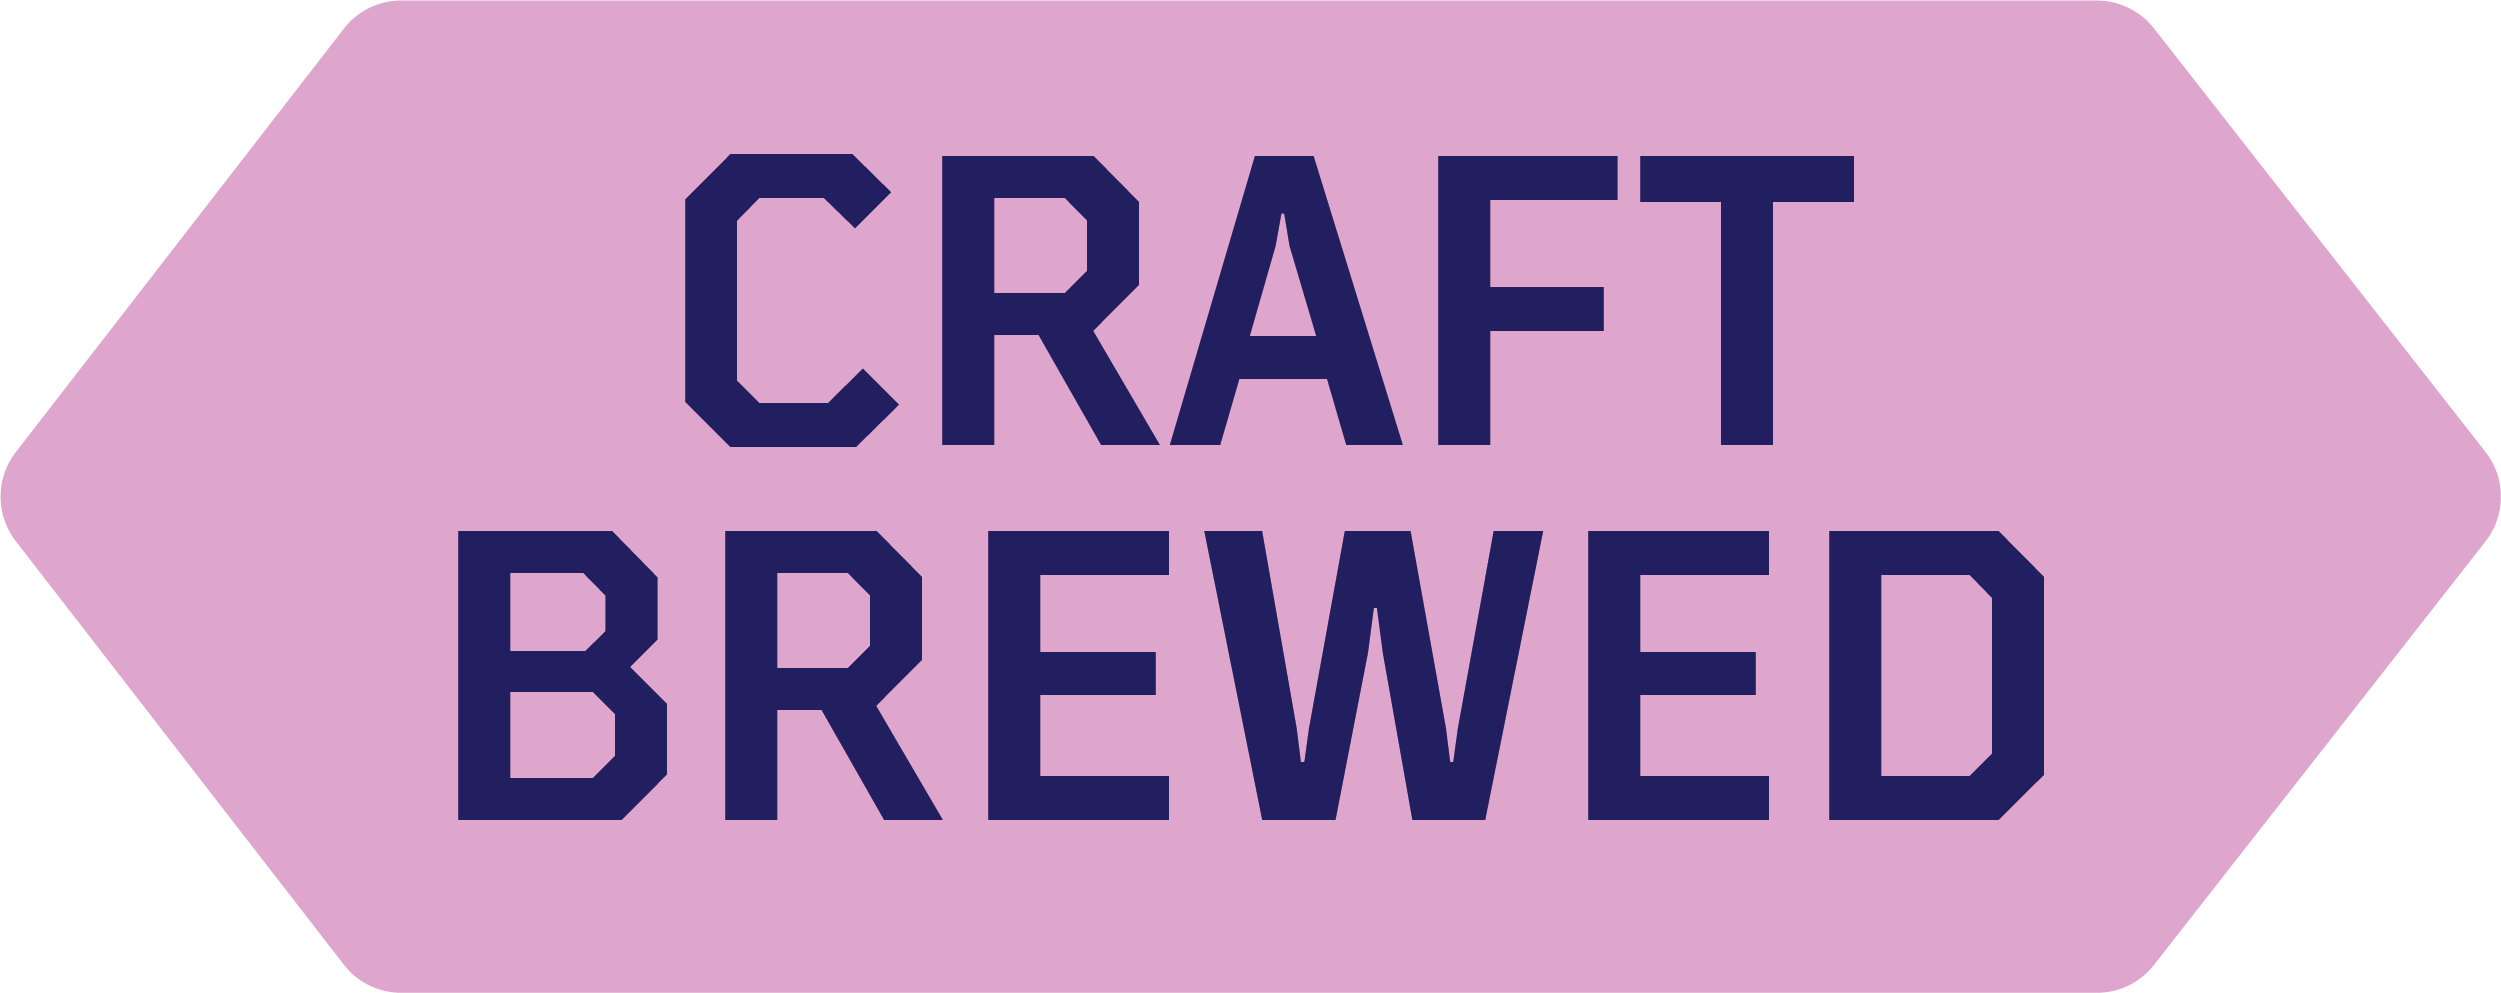 craft brewed